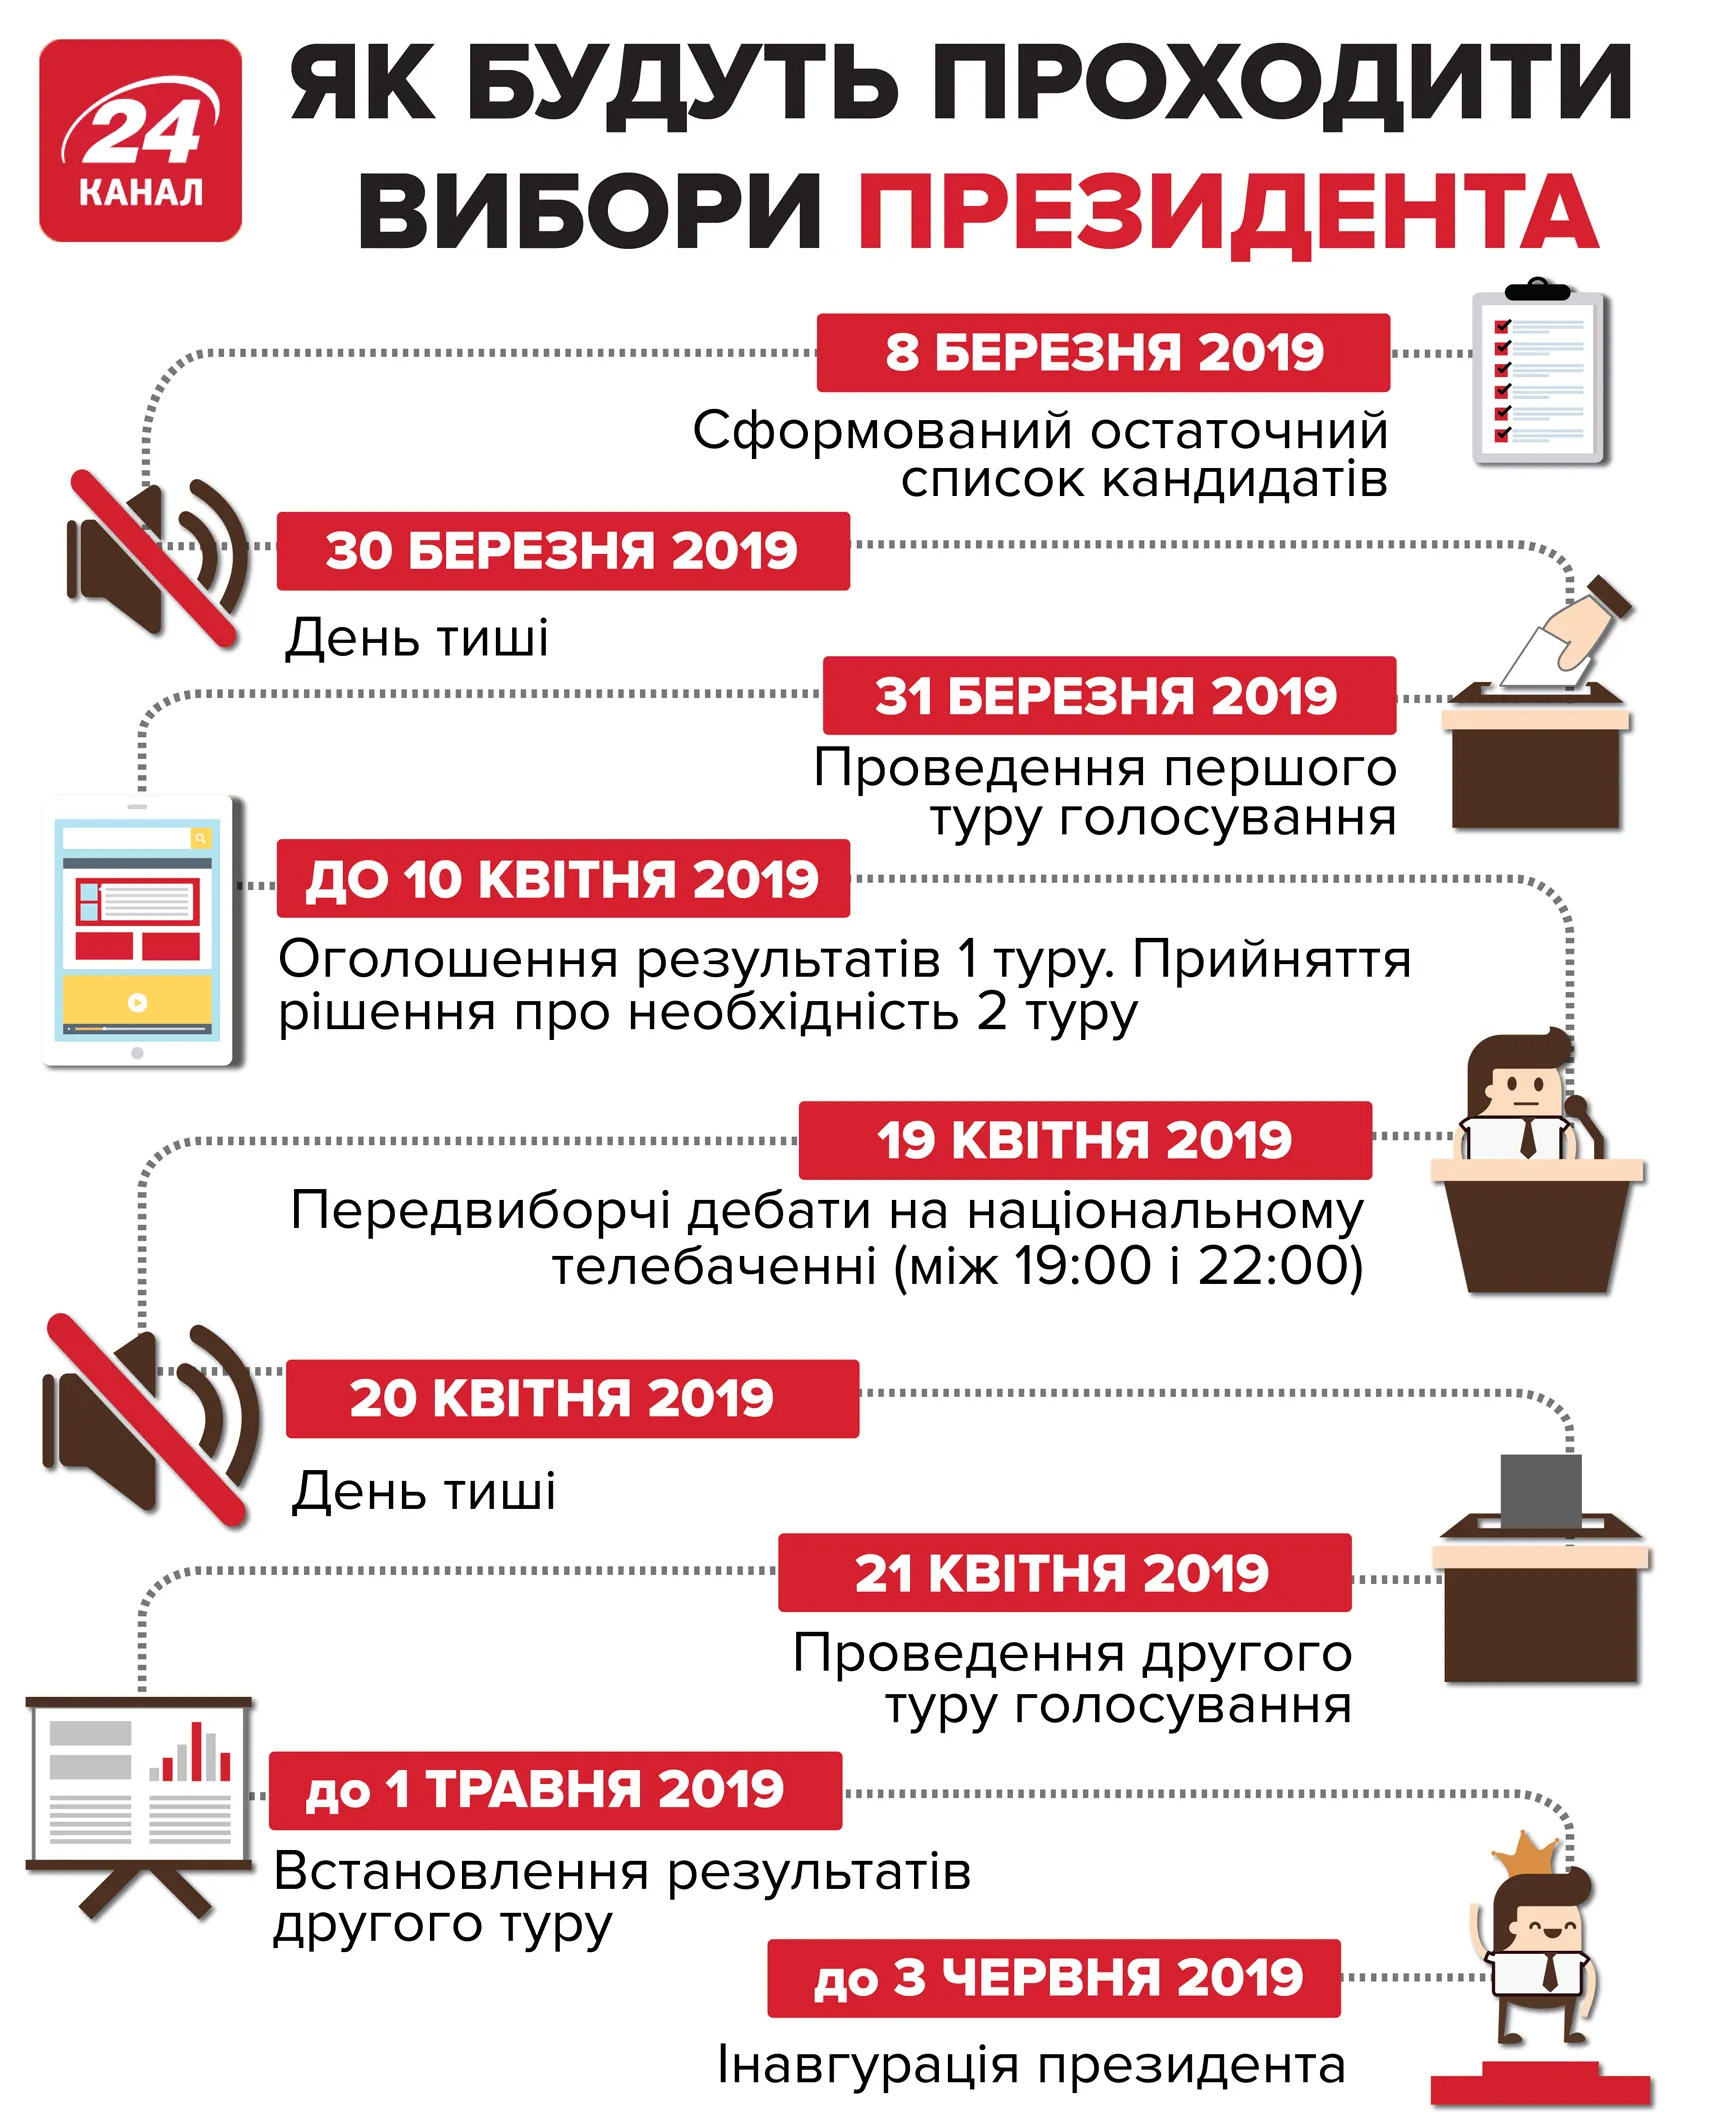 вибори в Україні президентські вибори голосування головні дати президентські вибори у 2019 році